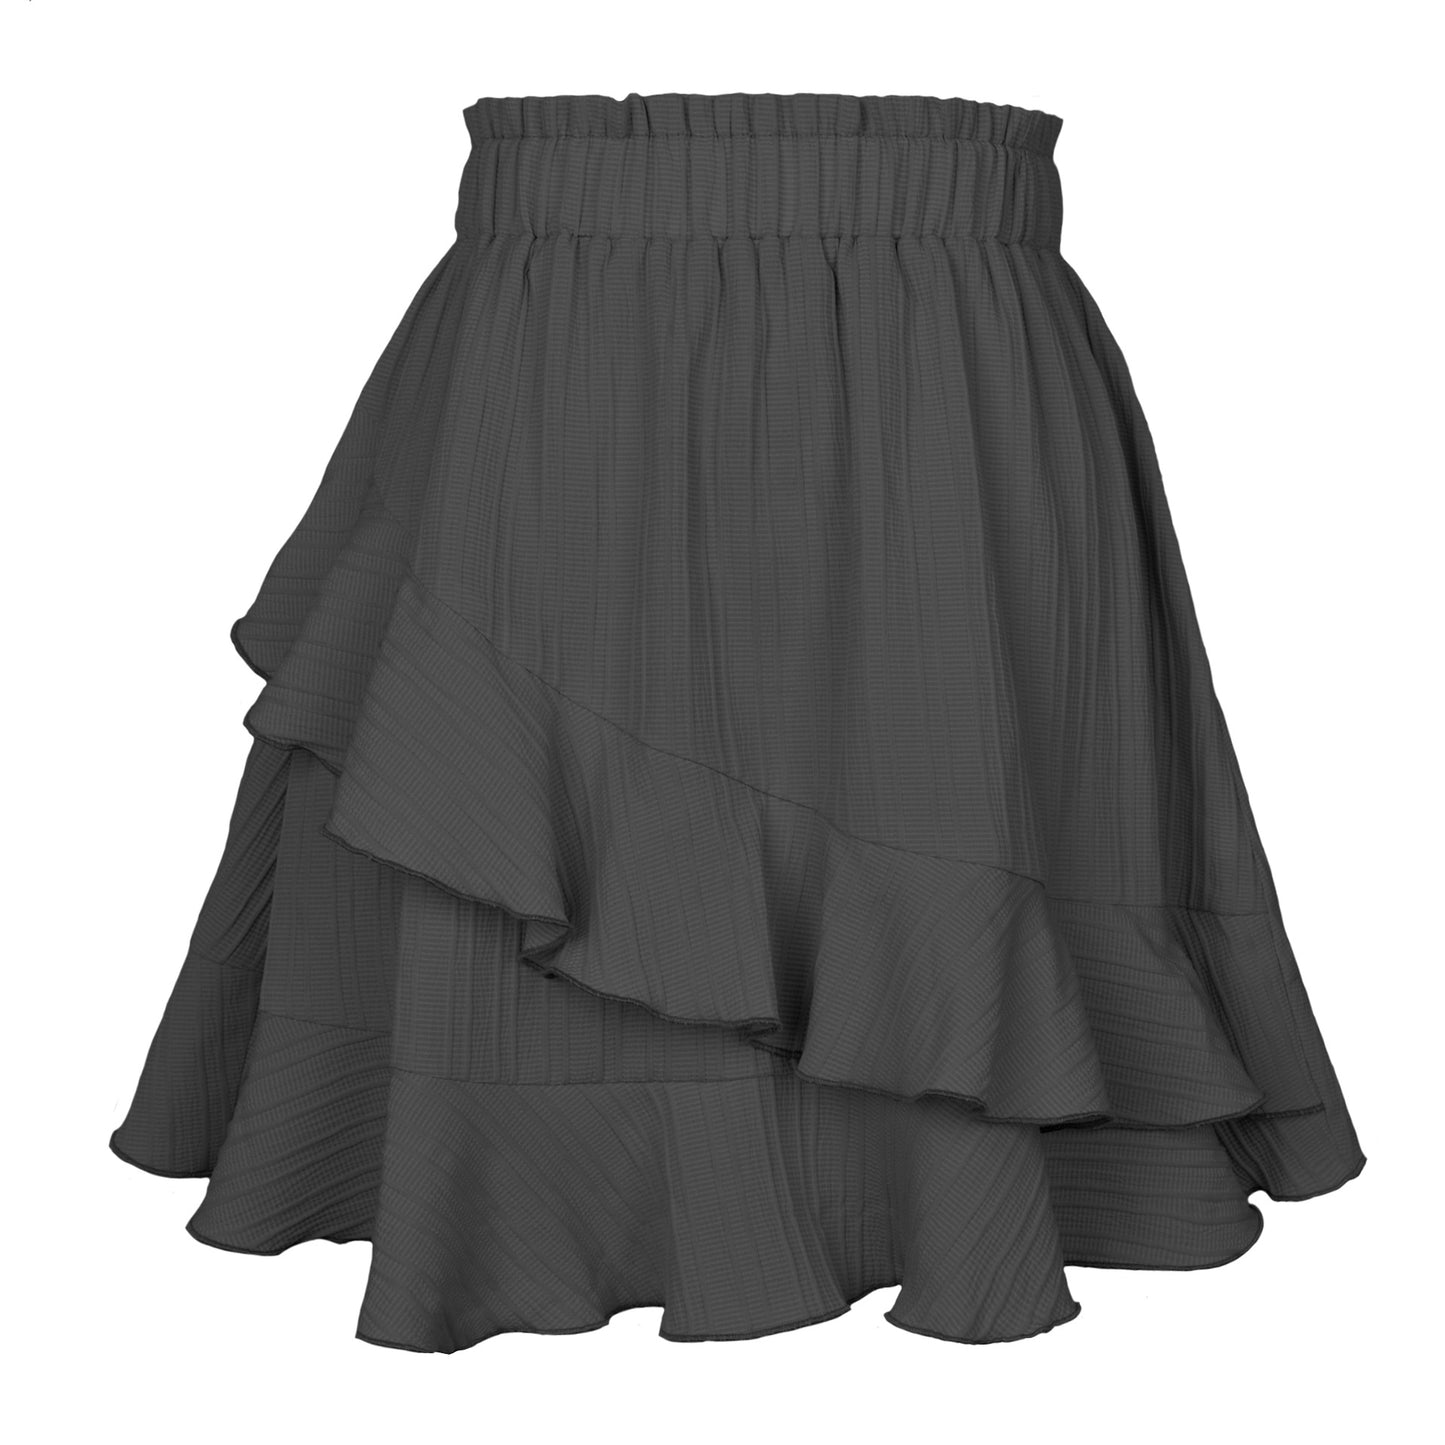 Ruffled Skirt Women's High Waist